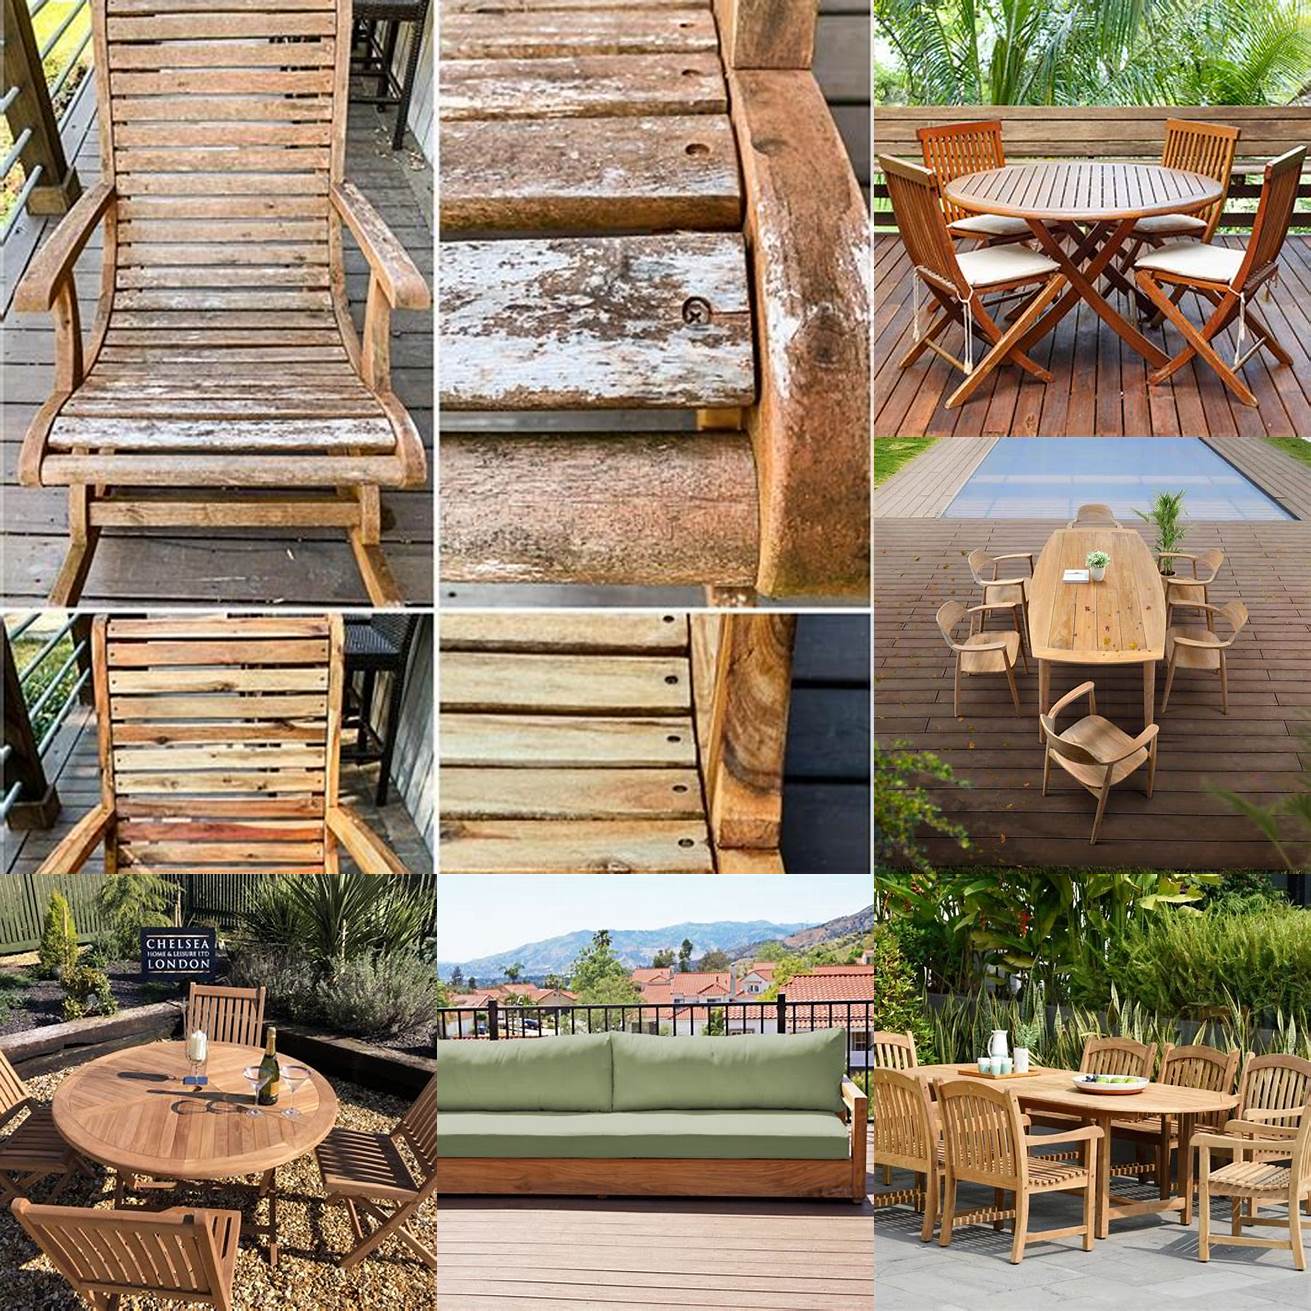 Teak outdoor furniture in the rain